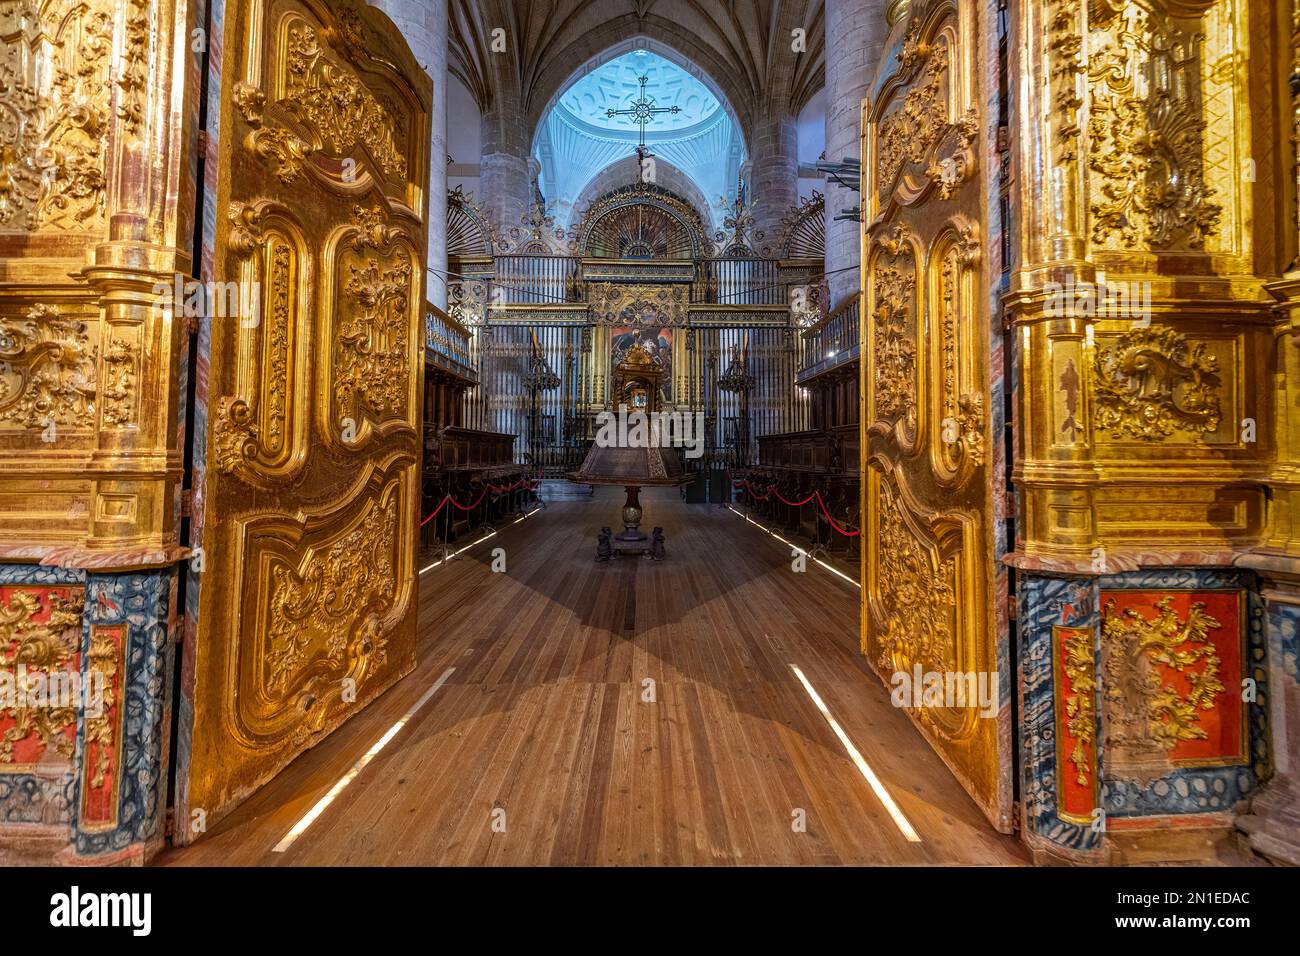 Entrée dorée à l'autel du monastère de Yuso, site classé au patrimoine mondial de l'UNESCO, monastères de San Millan de la Cogolla, la Rioja, Espagne, Europe Banque D'Images